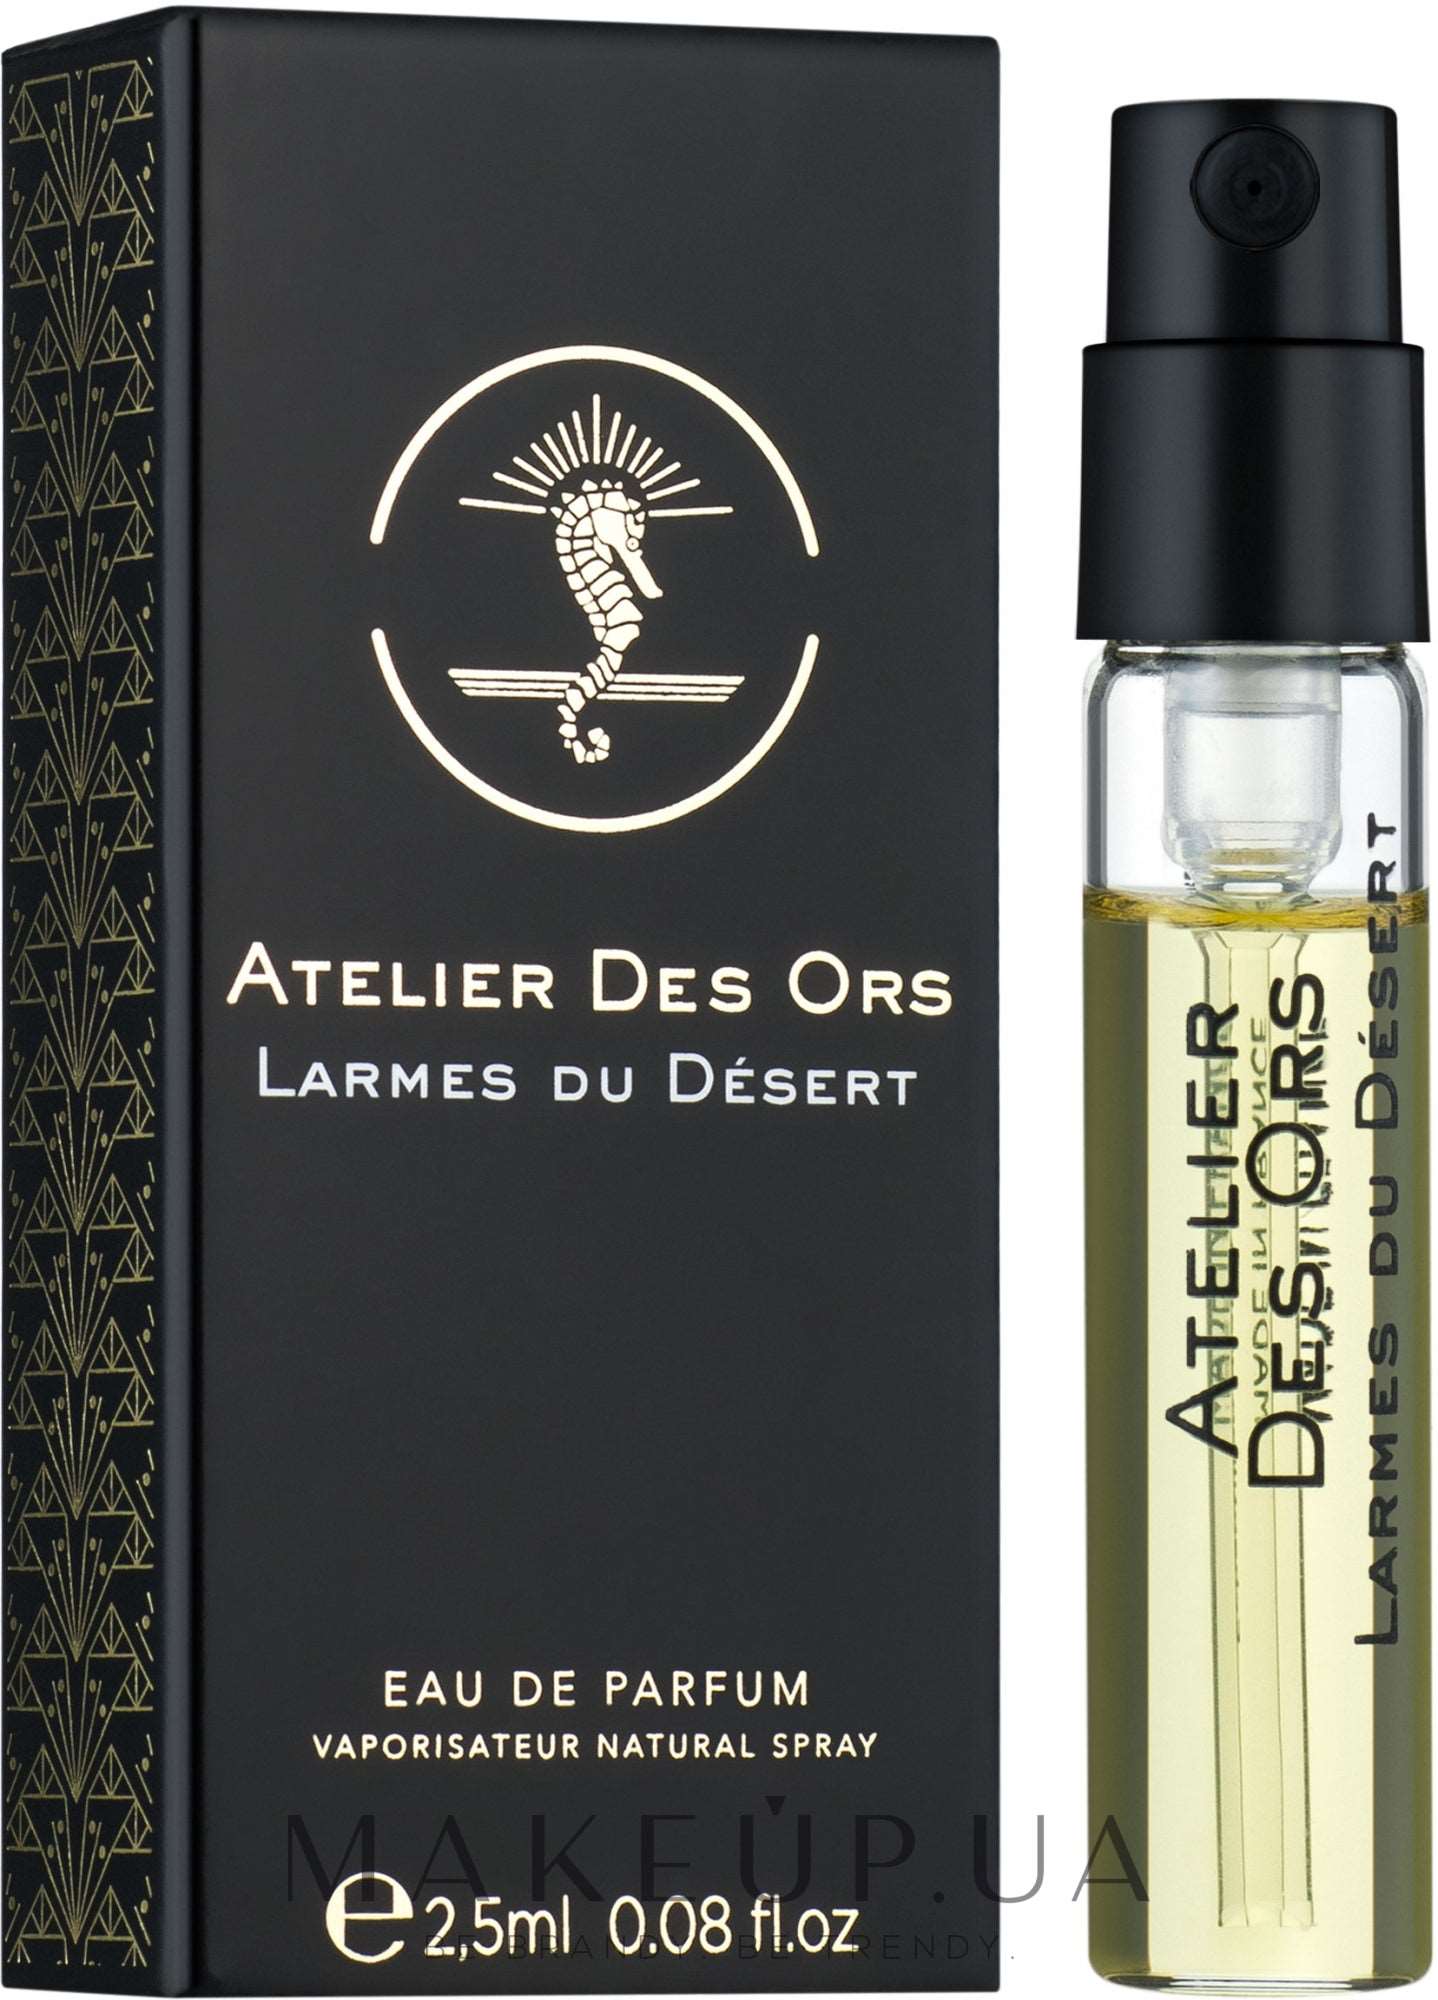 Atelier Des Ors Larmes du Desert 2.5ml 0.08 fl. oz. Oficiální vzorky parfémů